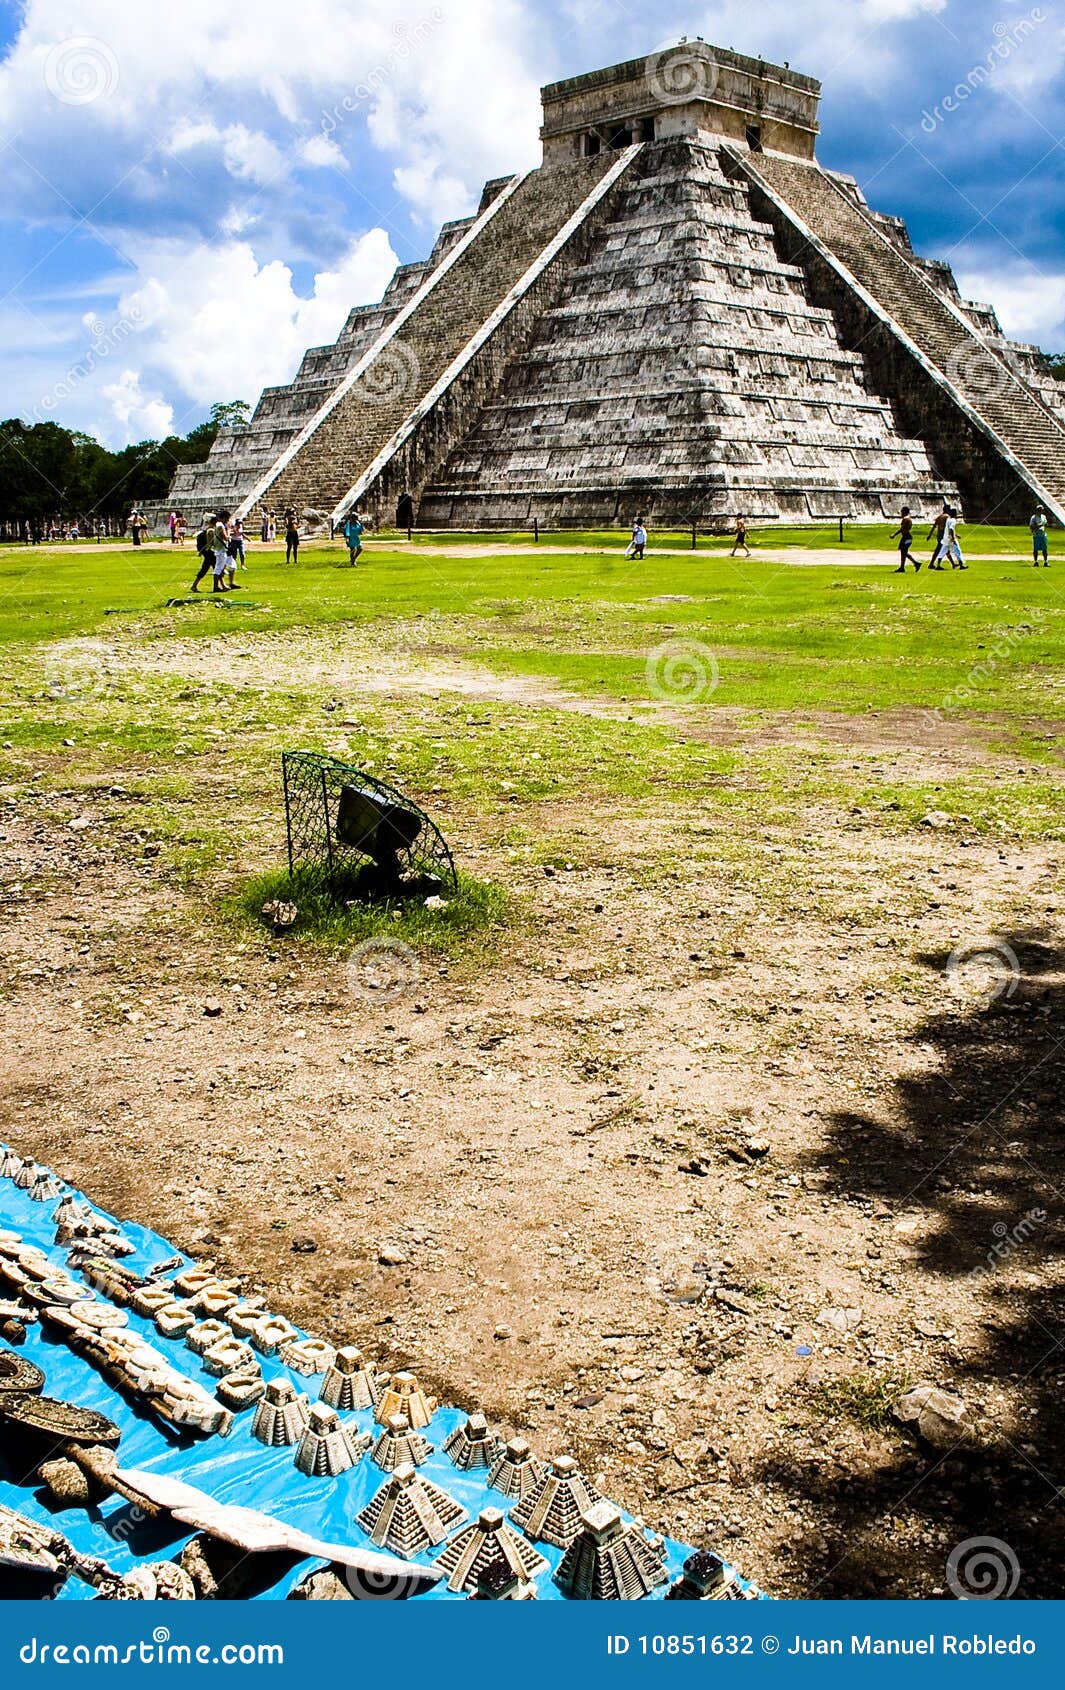 pyramid of chichen itza, mexico